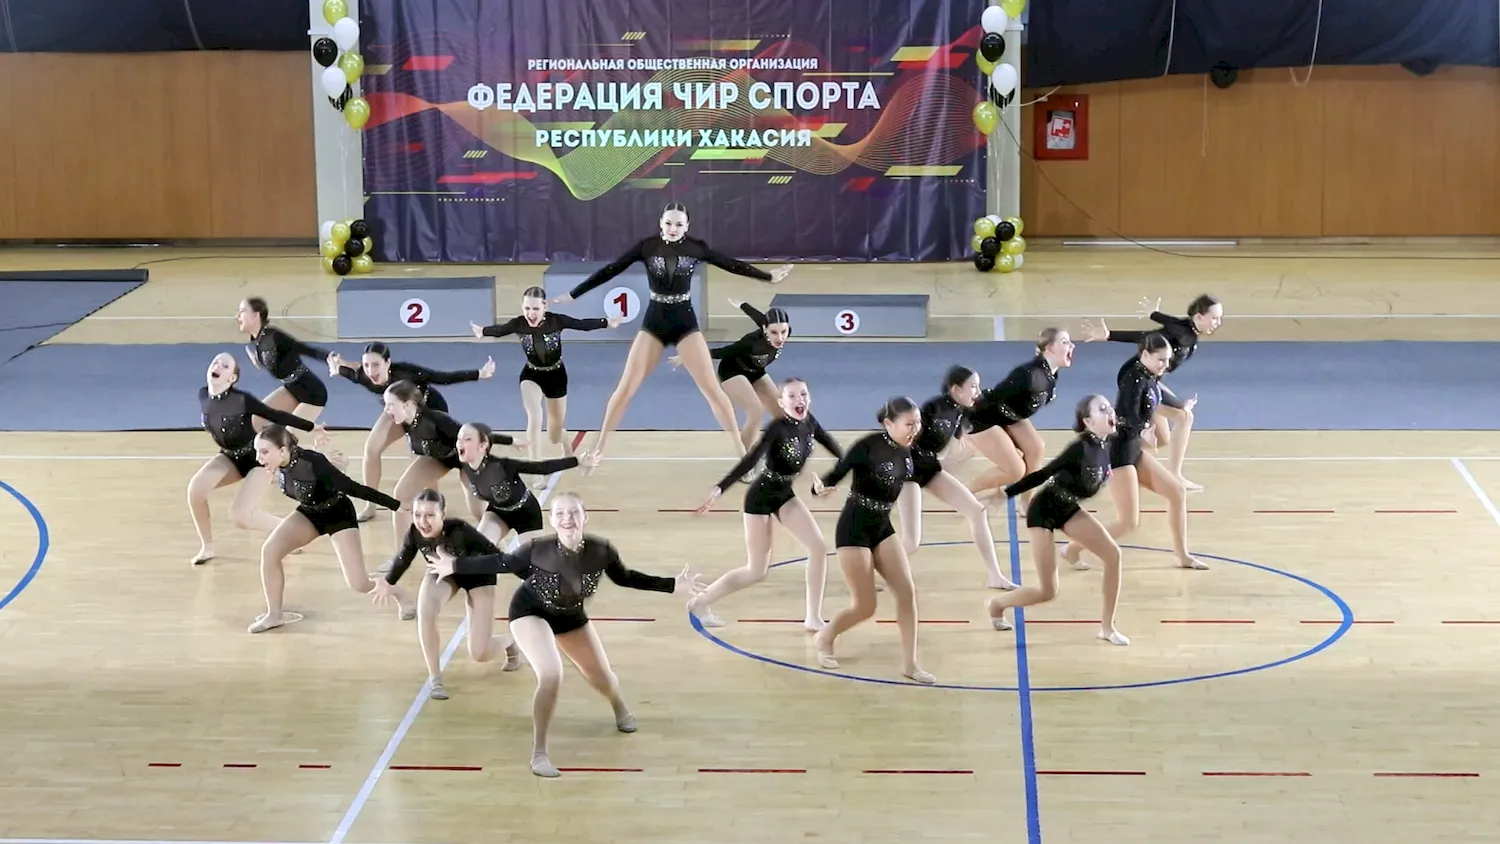 Федерация Чир спорта Республики Хакасия